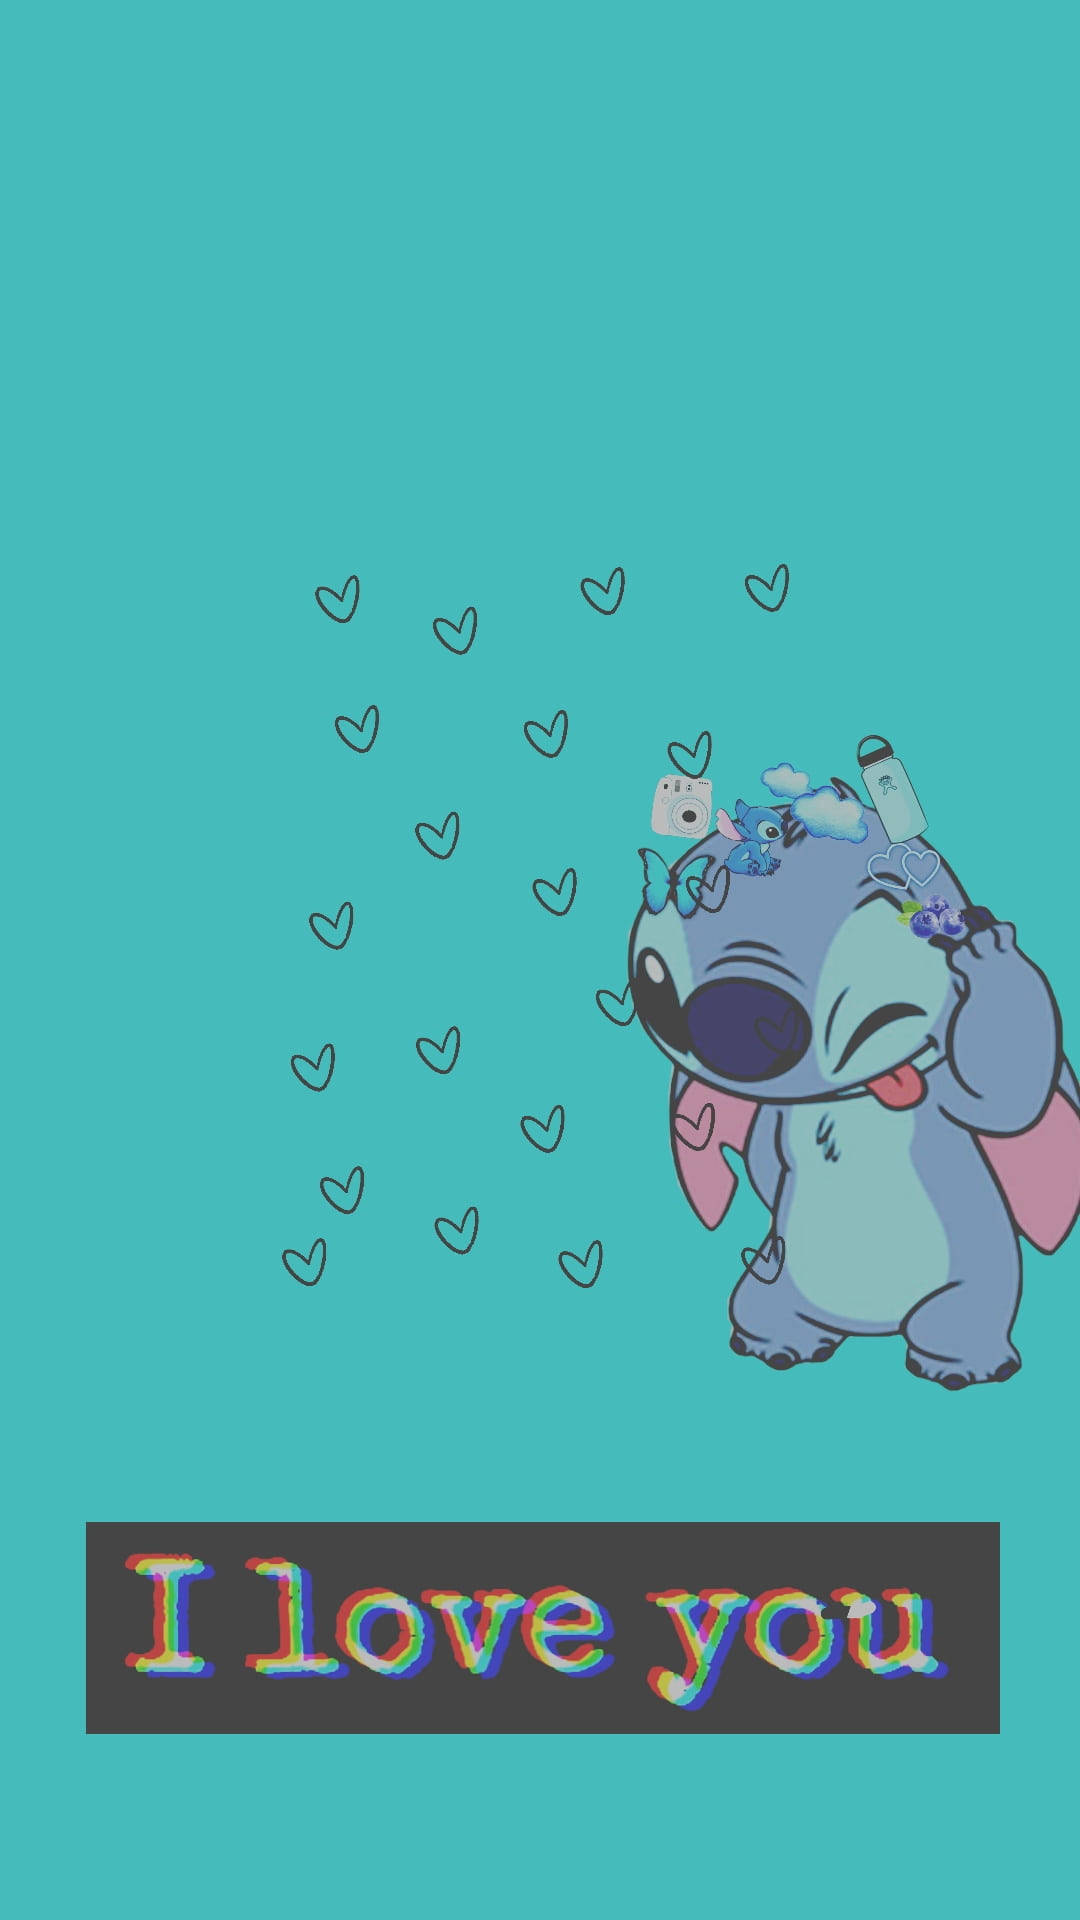 Shy Cute Disney Stitch Wallpaper